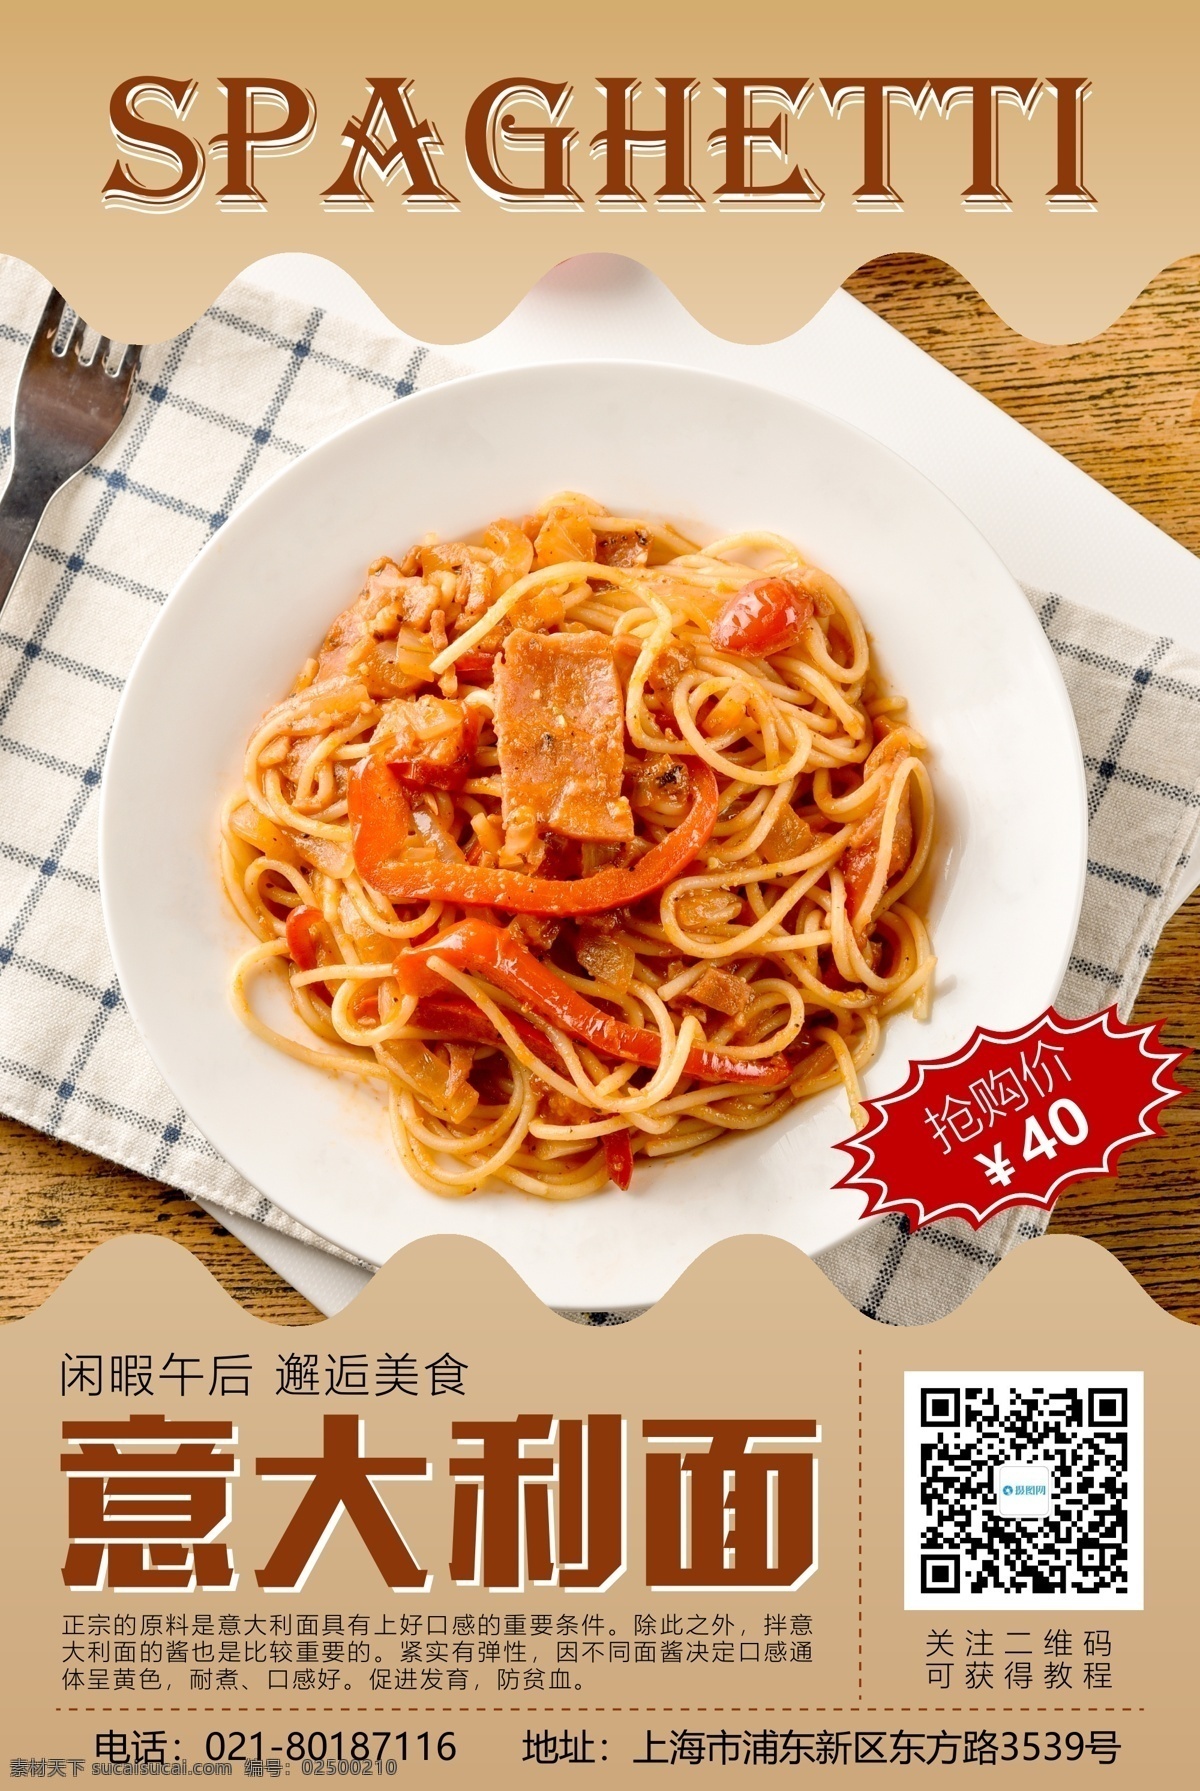 意大利 促销 海报 面条 美食 美味 风情 邂逅美食 促销海报 美食海报